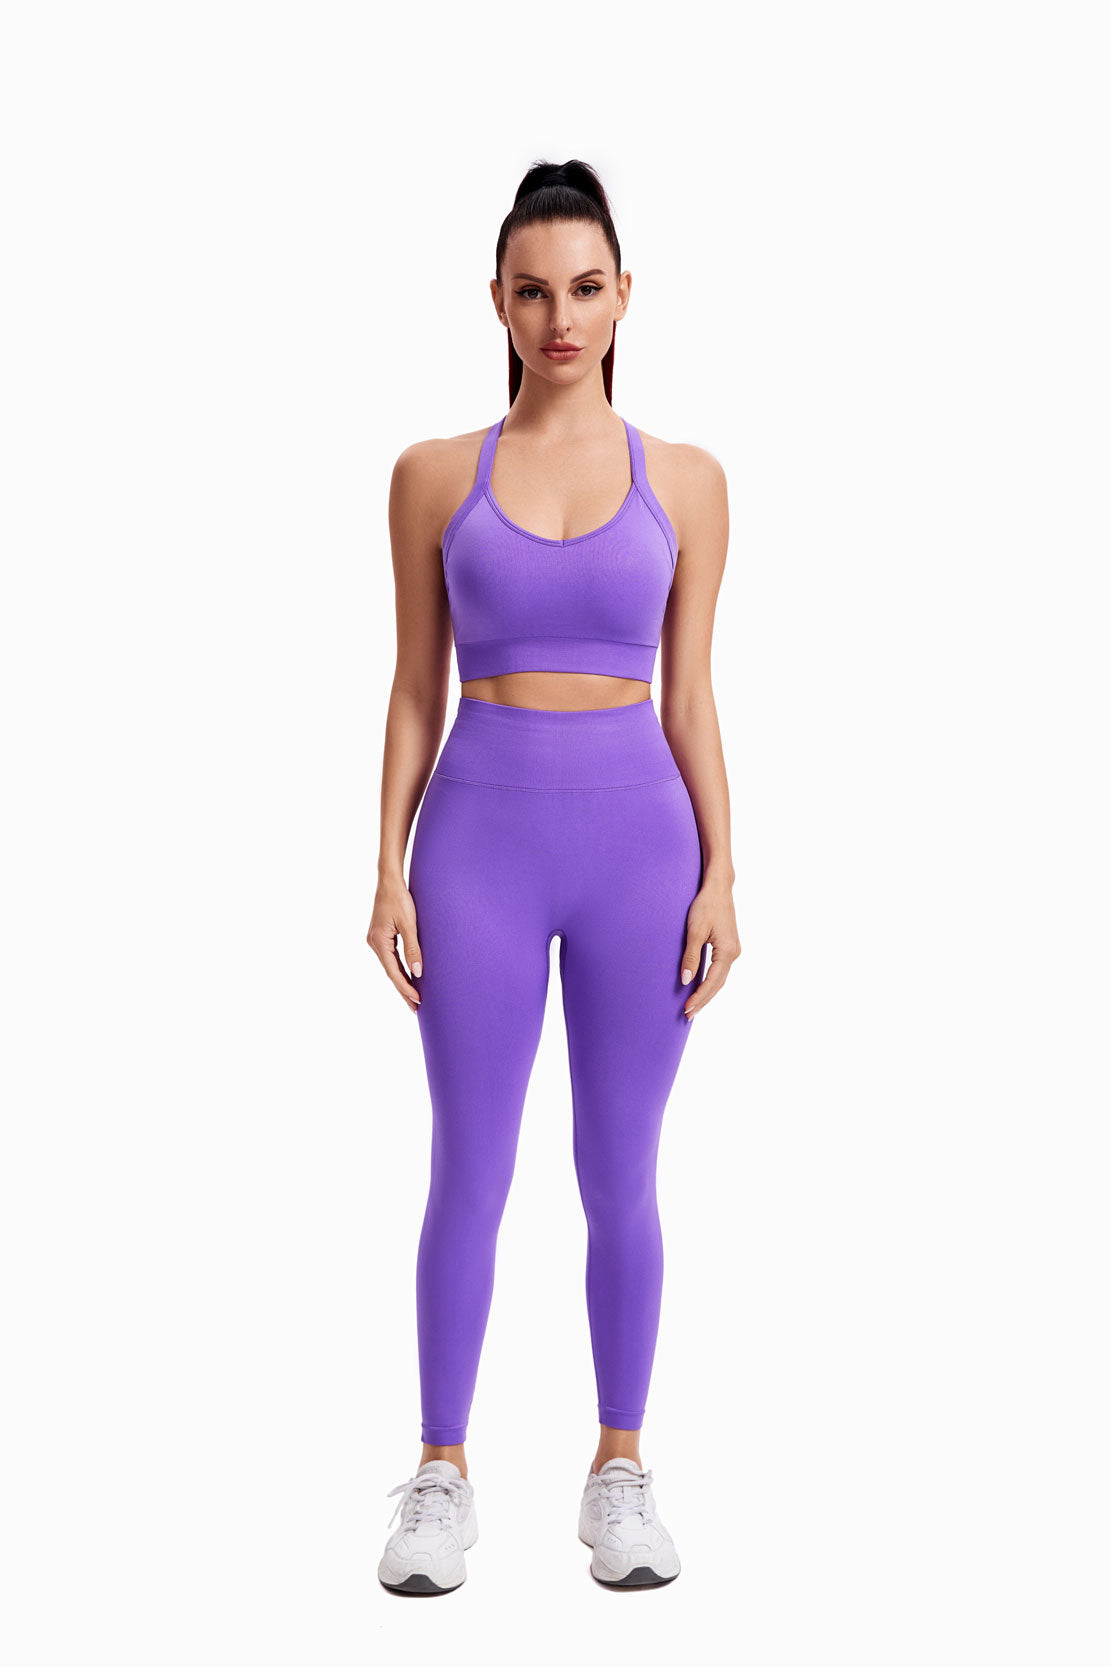 HIIT Seamless Sportswear Sets Truetights Wisteria Purple S 